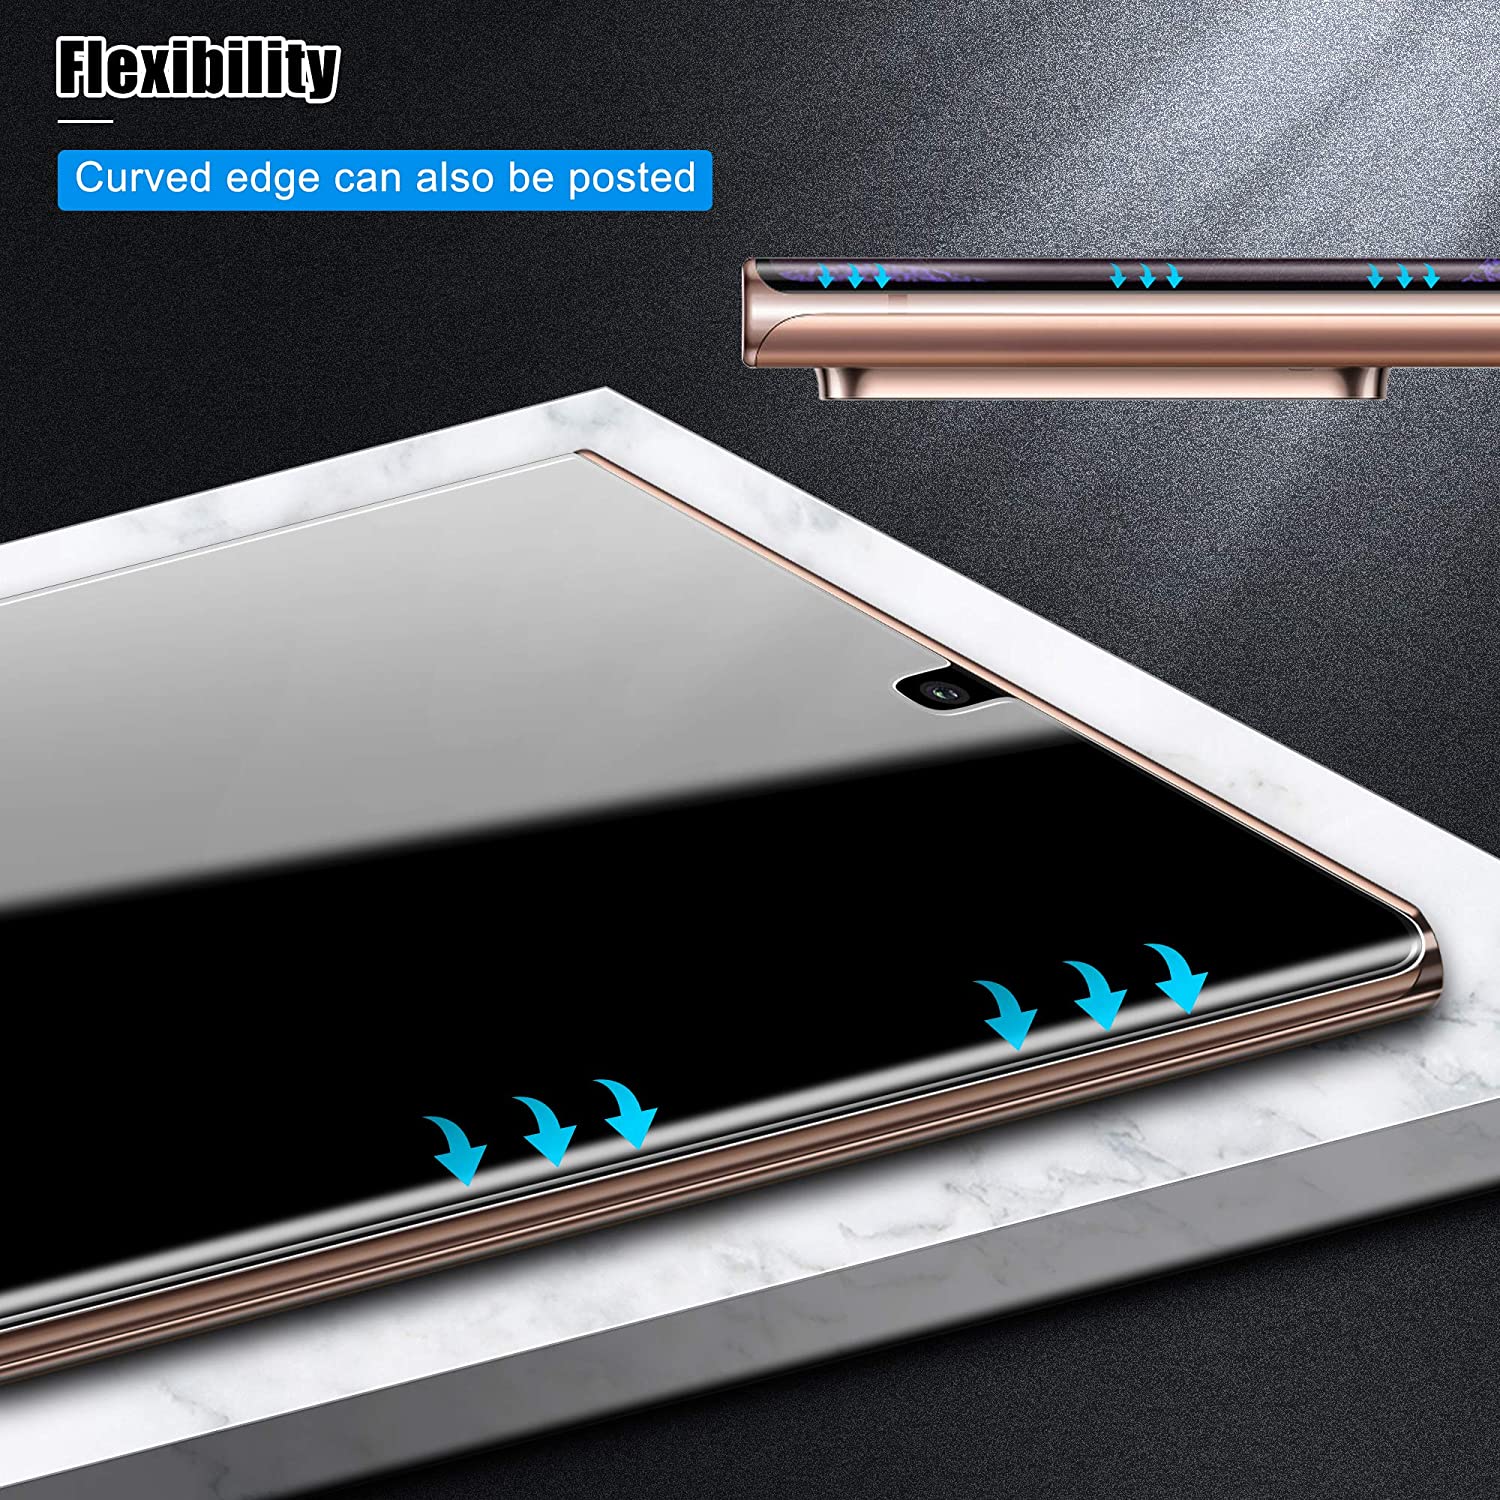 Miếng dán dẻo PPF chống trầy màn hình cho Samsung Galaxy Note 20 Ultra hiệu Vmax